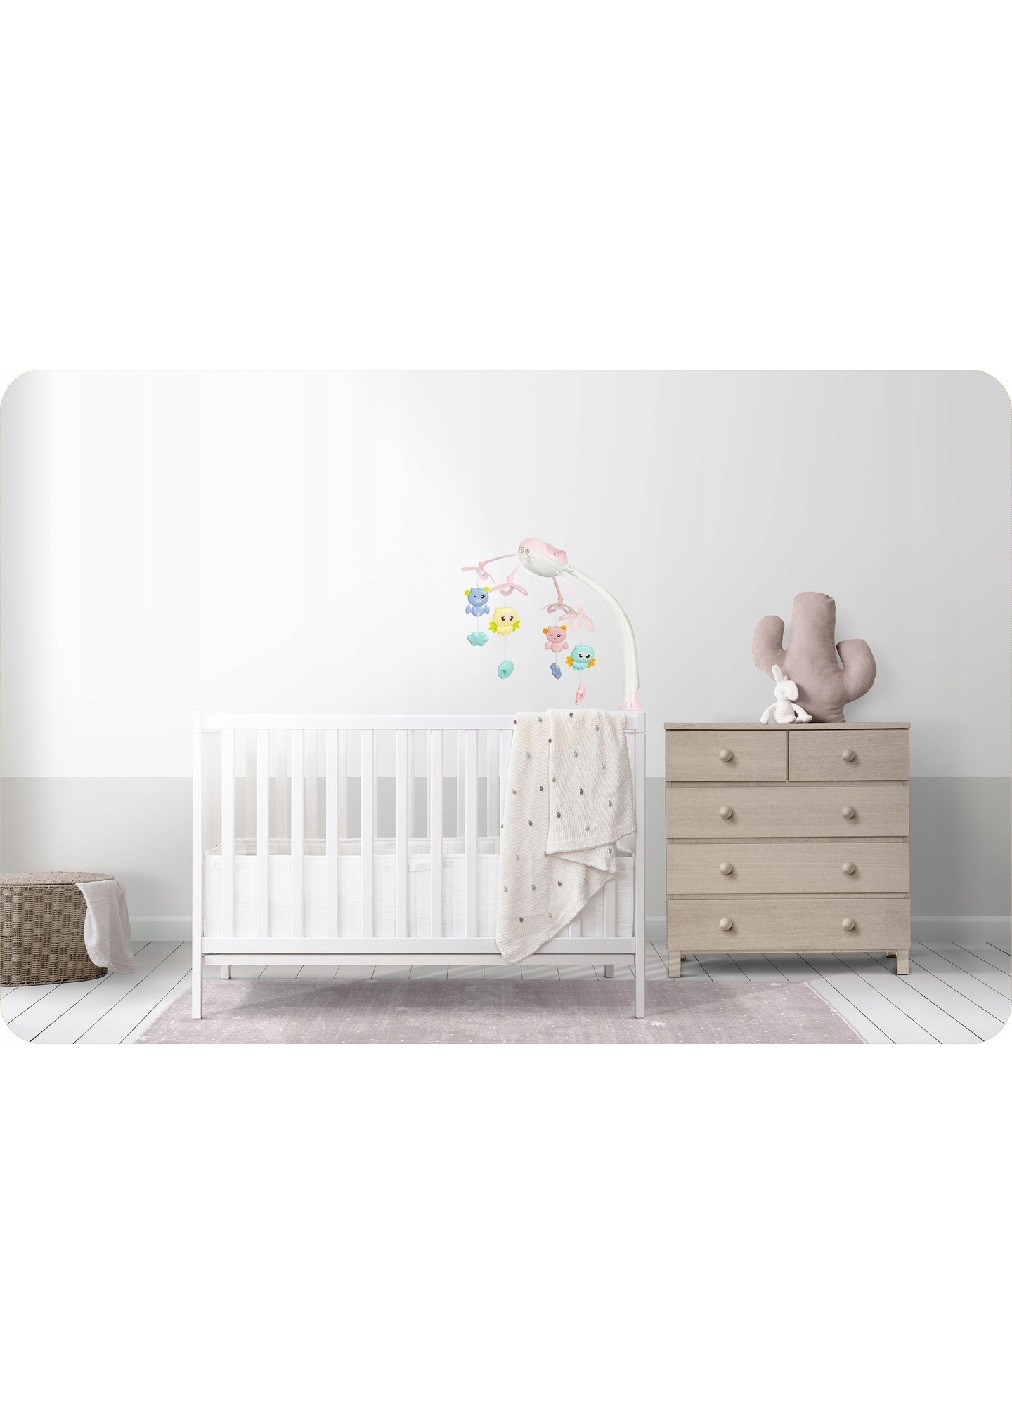 Мобиль на кроватку с игрушками проектором мелодиями дистанционным управлением для детей малышей (475470-Prob) Розовый Unbranded (267890428)